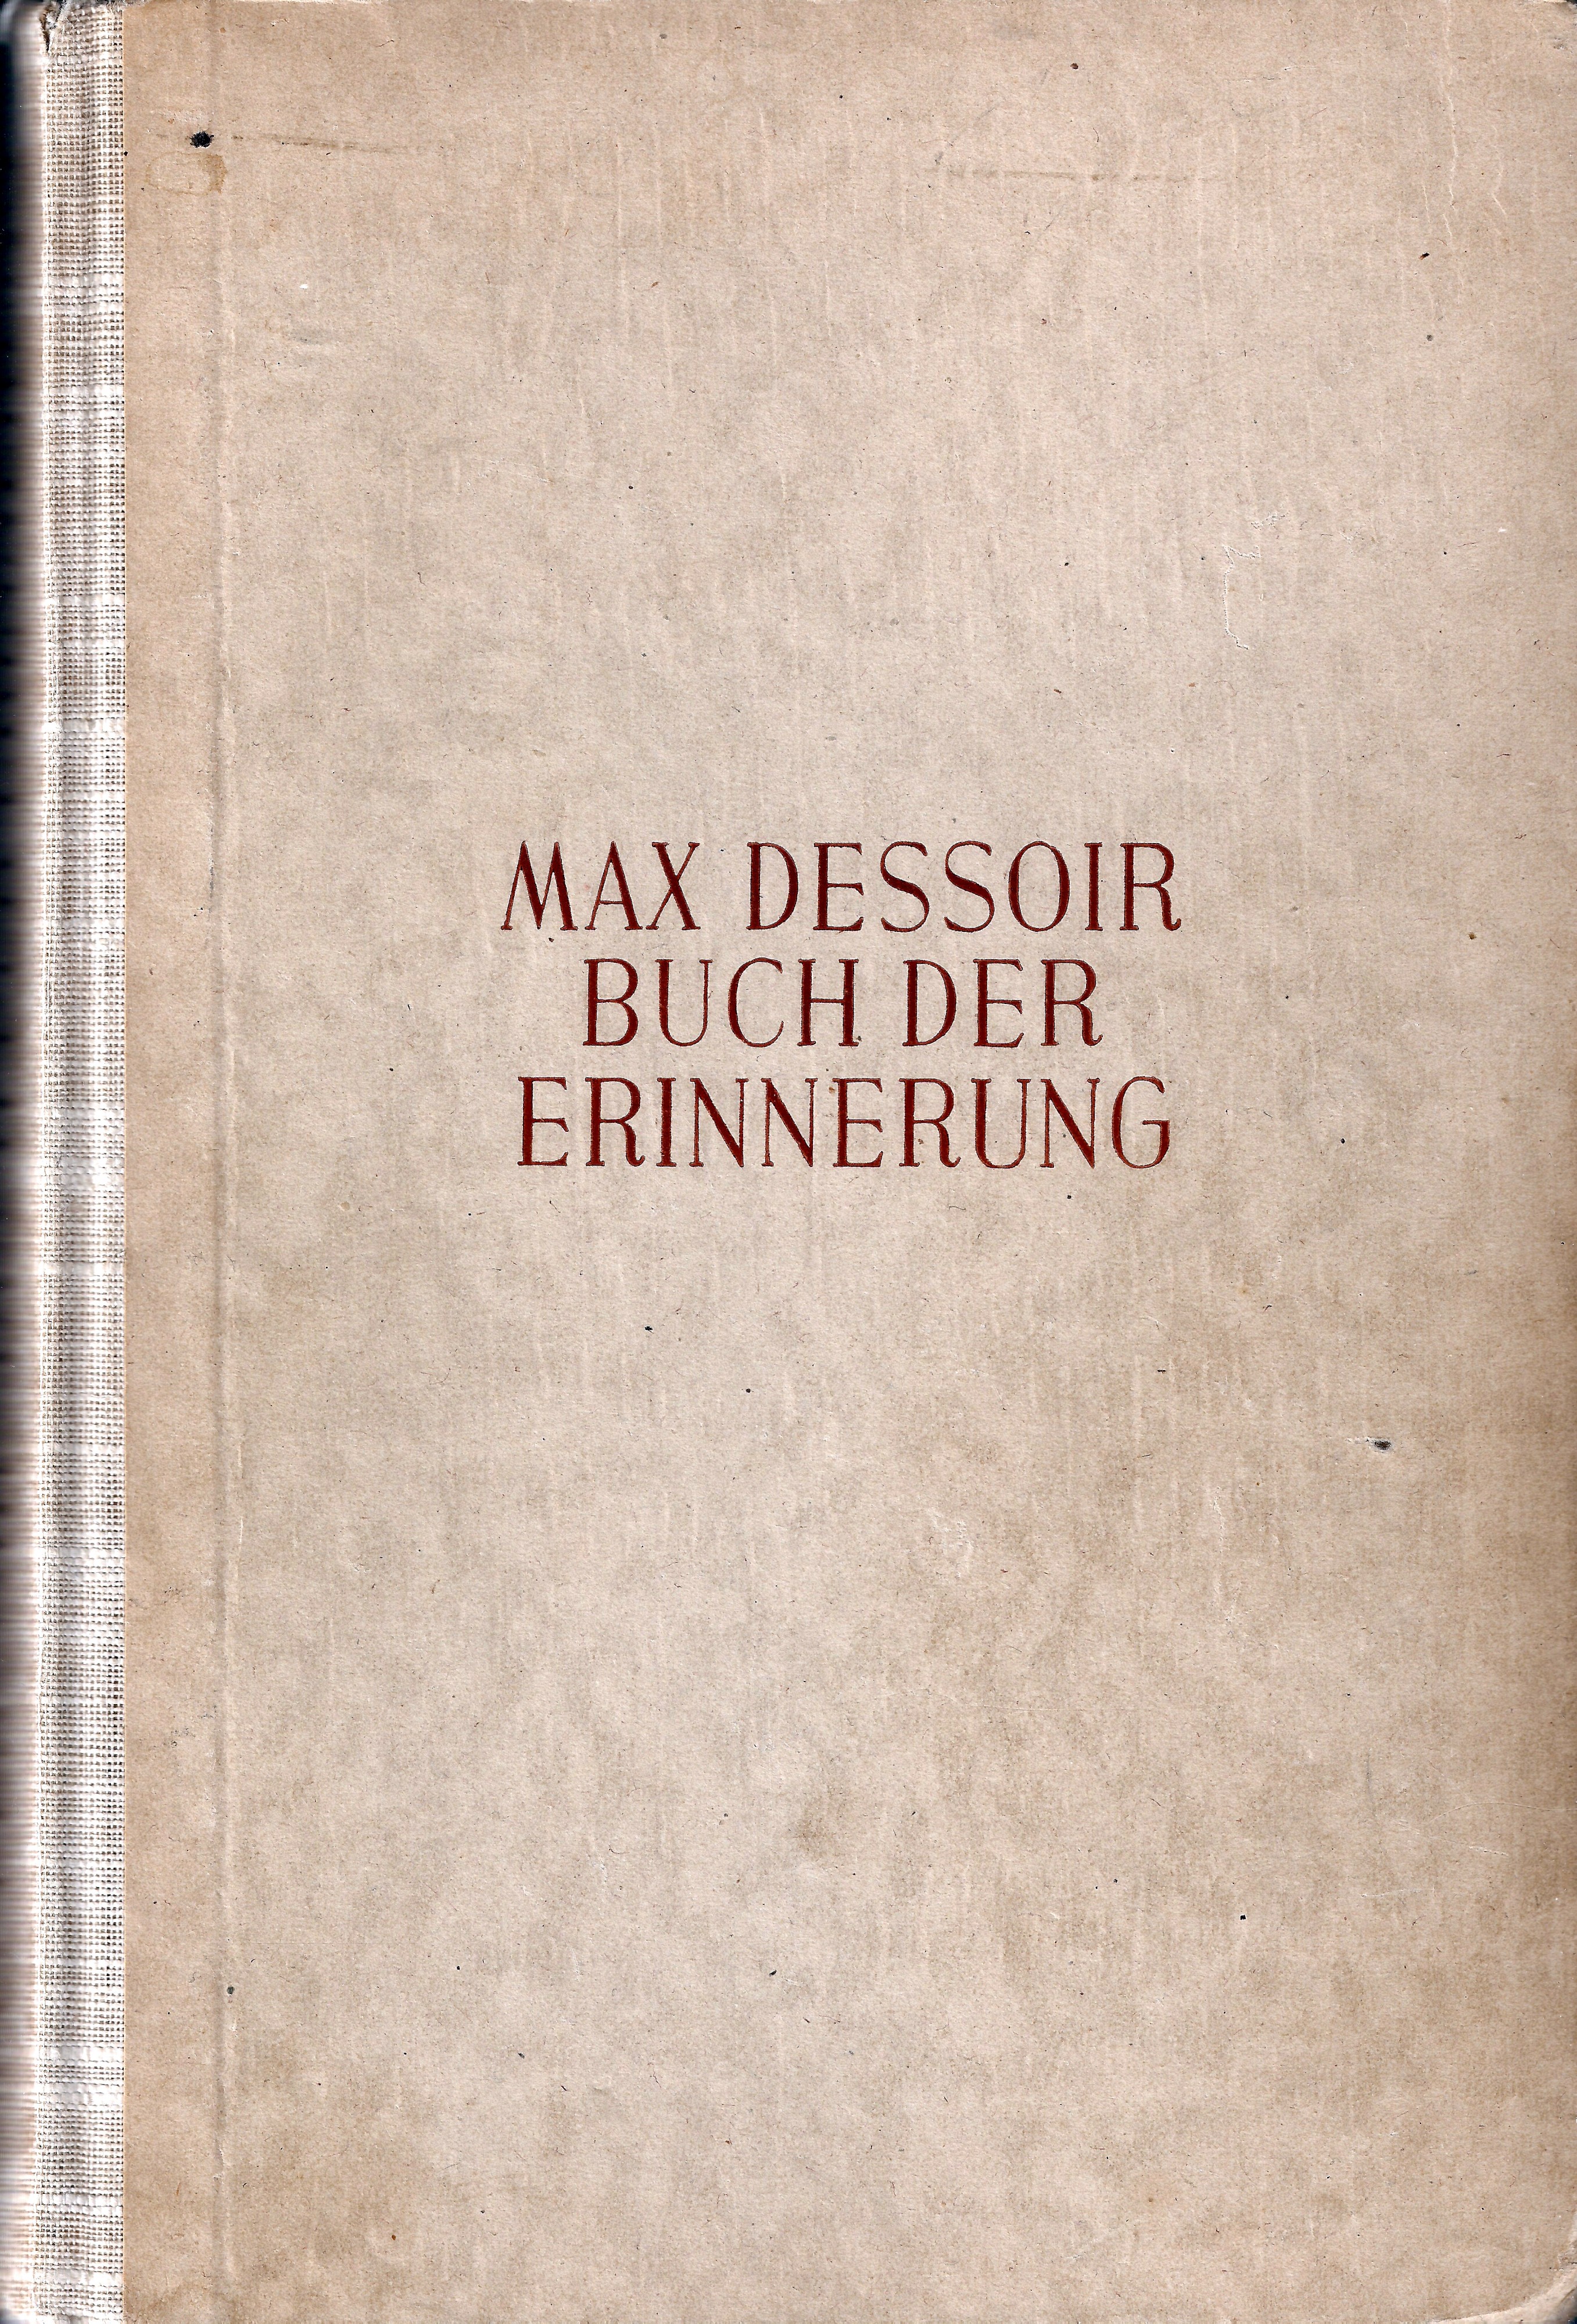 Max Dessoir - Buch der Erinnerung, Umschlagseite, Hardcover, Stuttgart 1947, Copyright 1946 by Ferdinand Enke